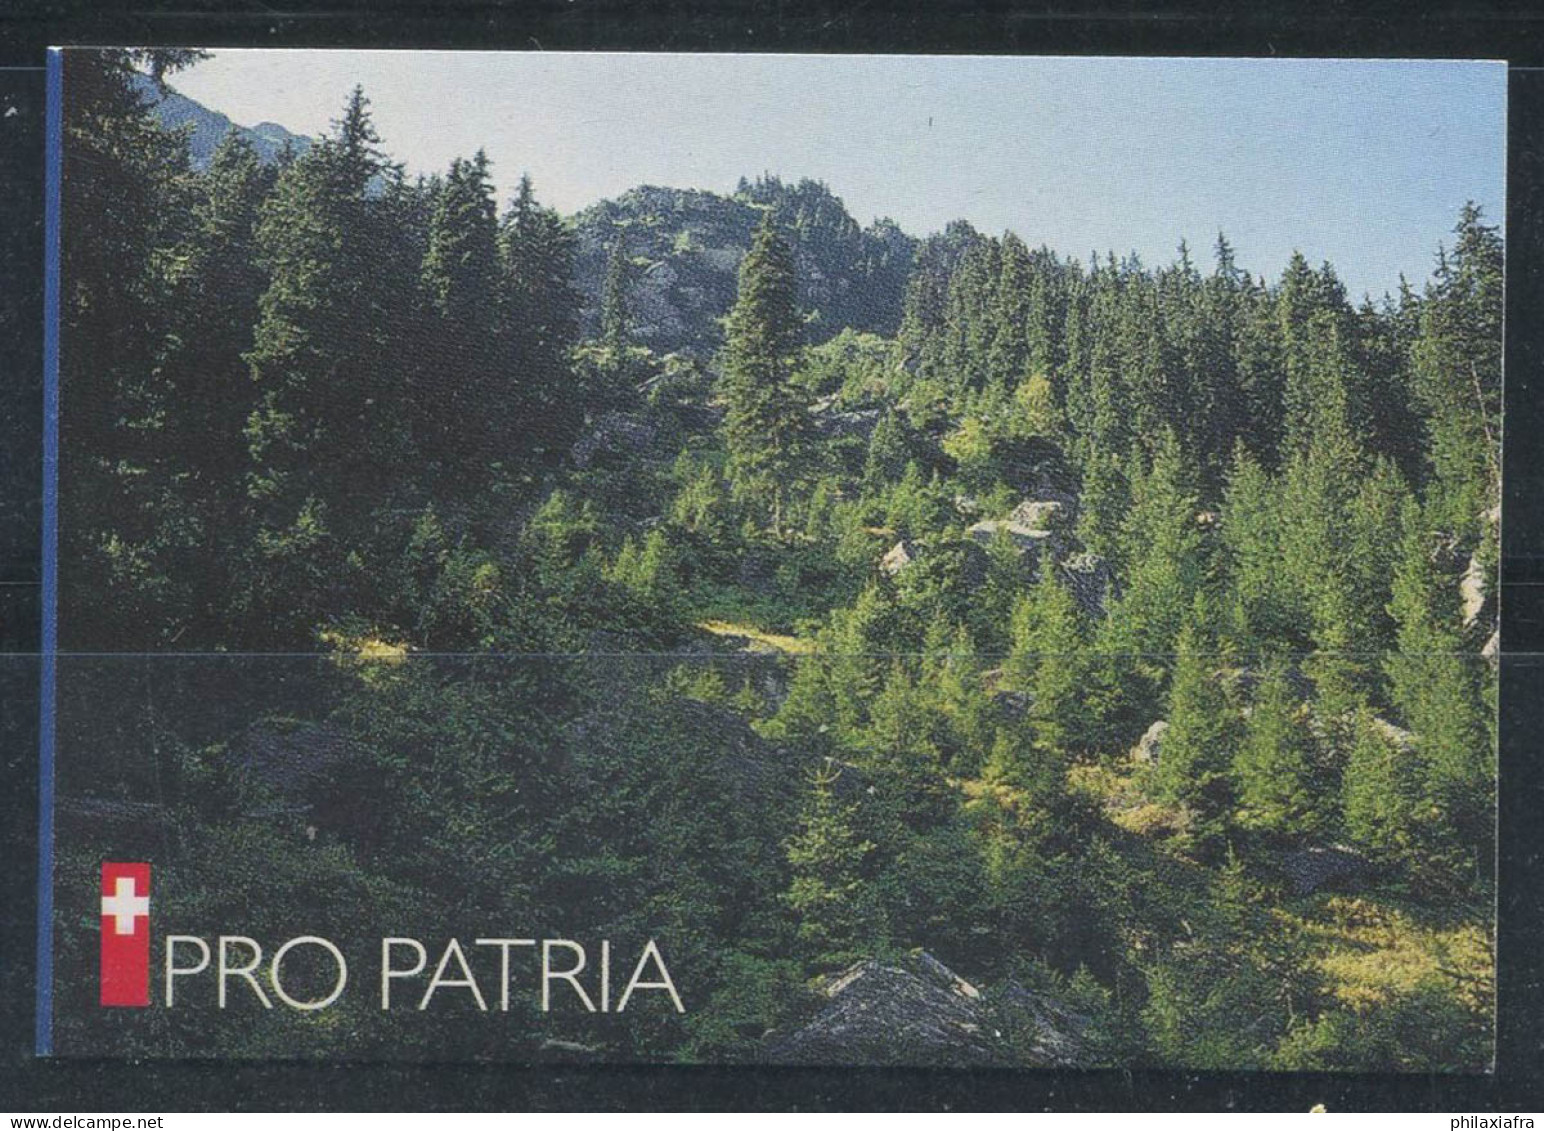 Suisse 1998 Mi. MH 0-110 Carnet 100% Pro Patria Oblitéré - Booklets